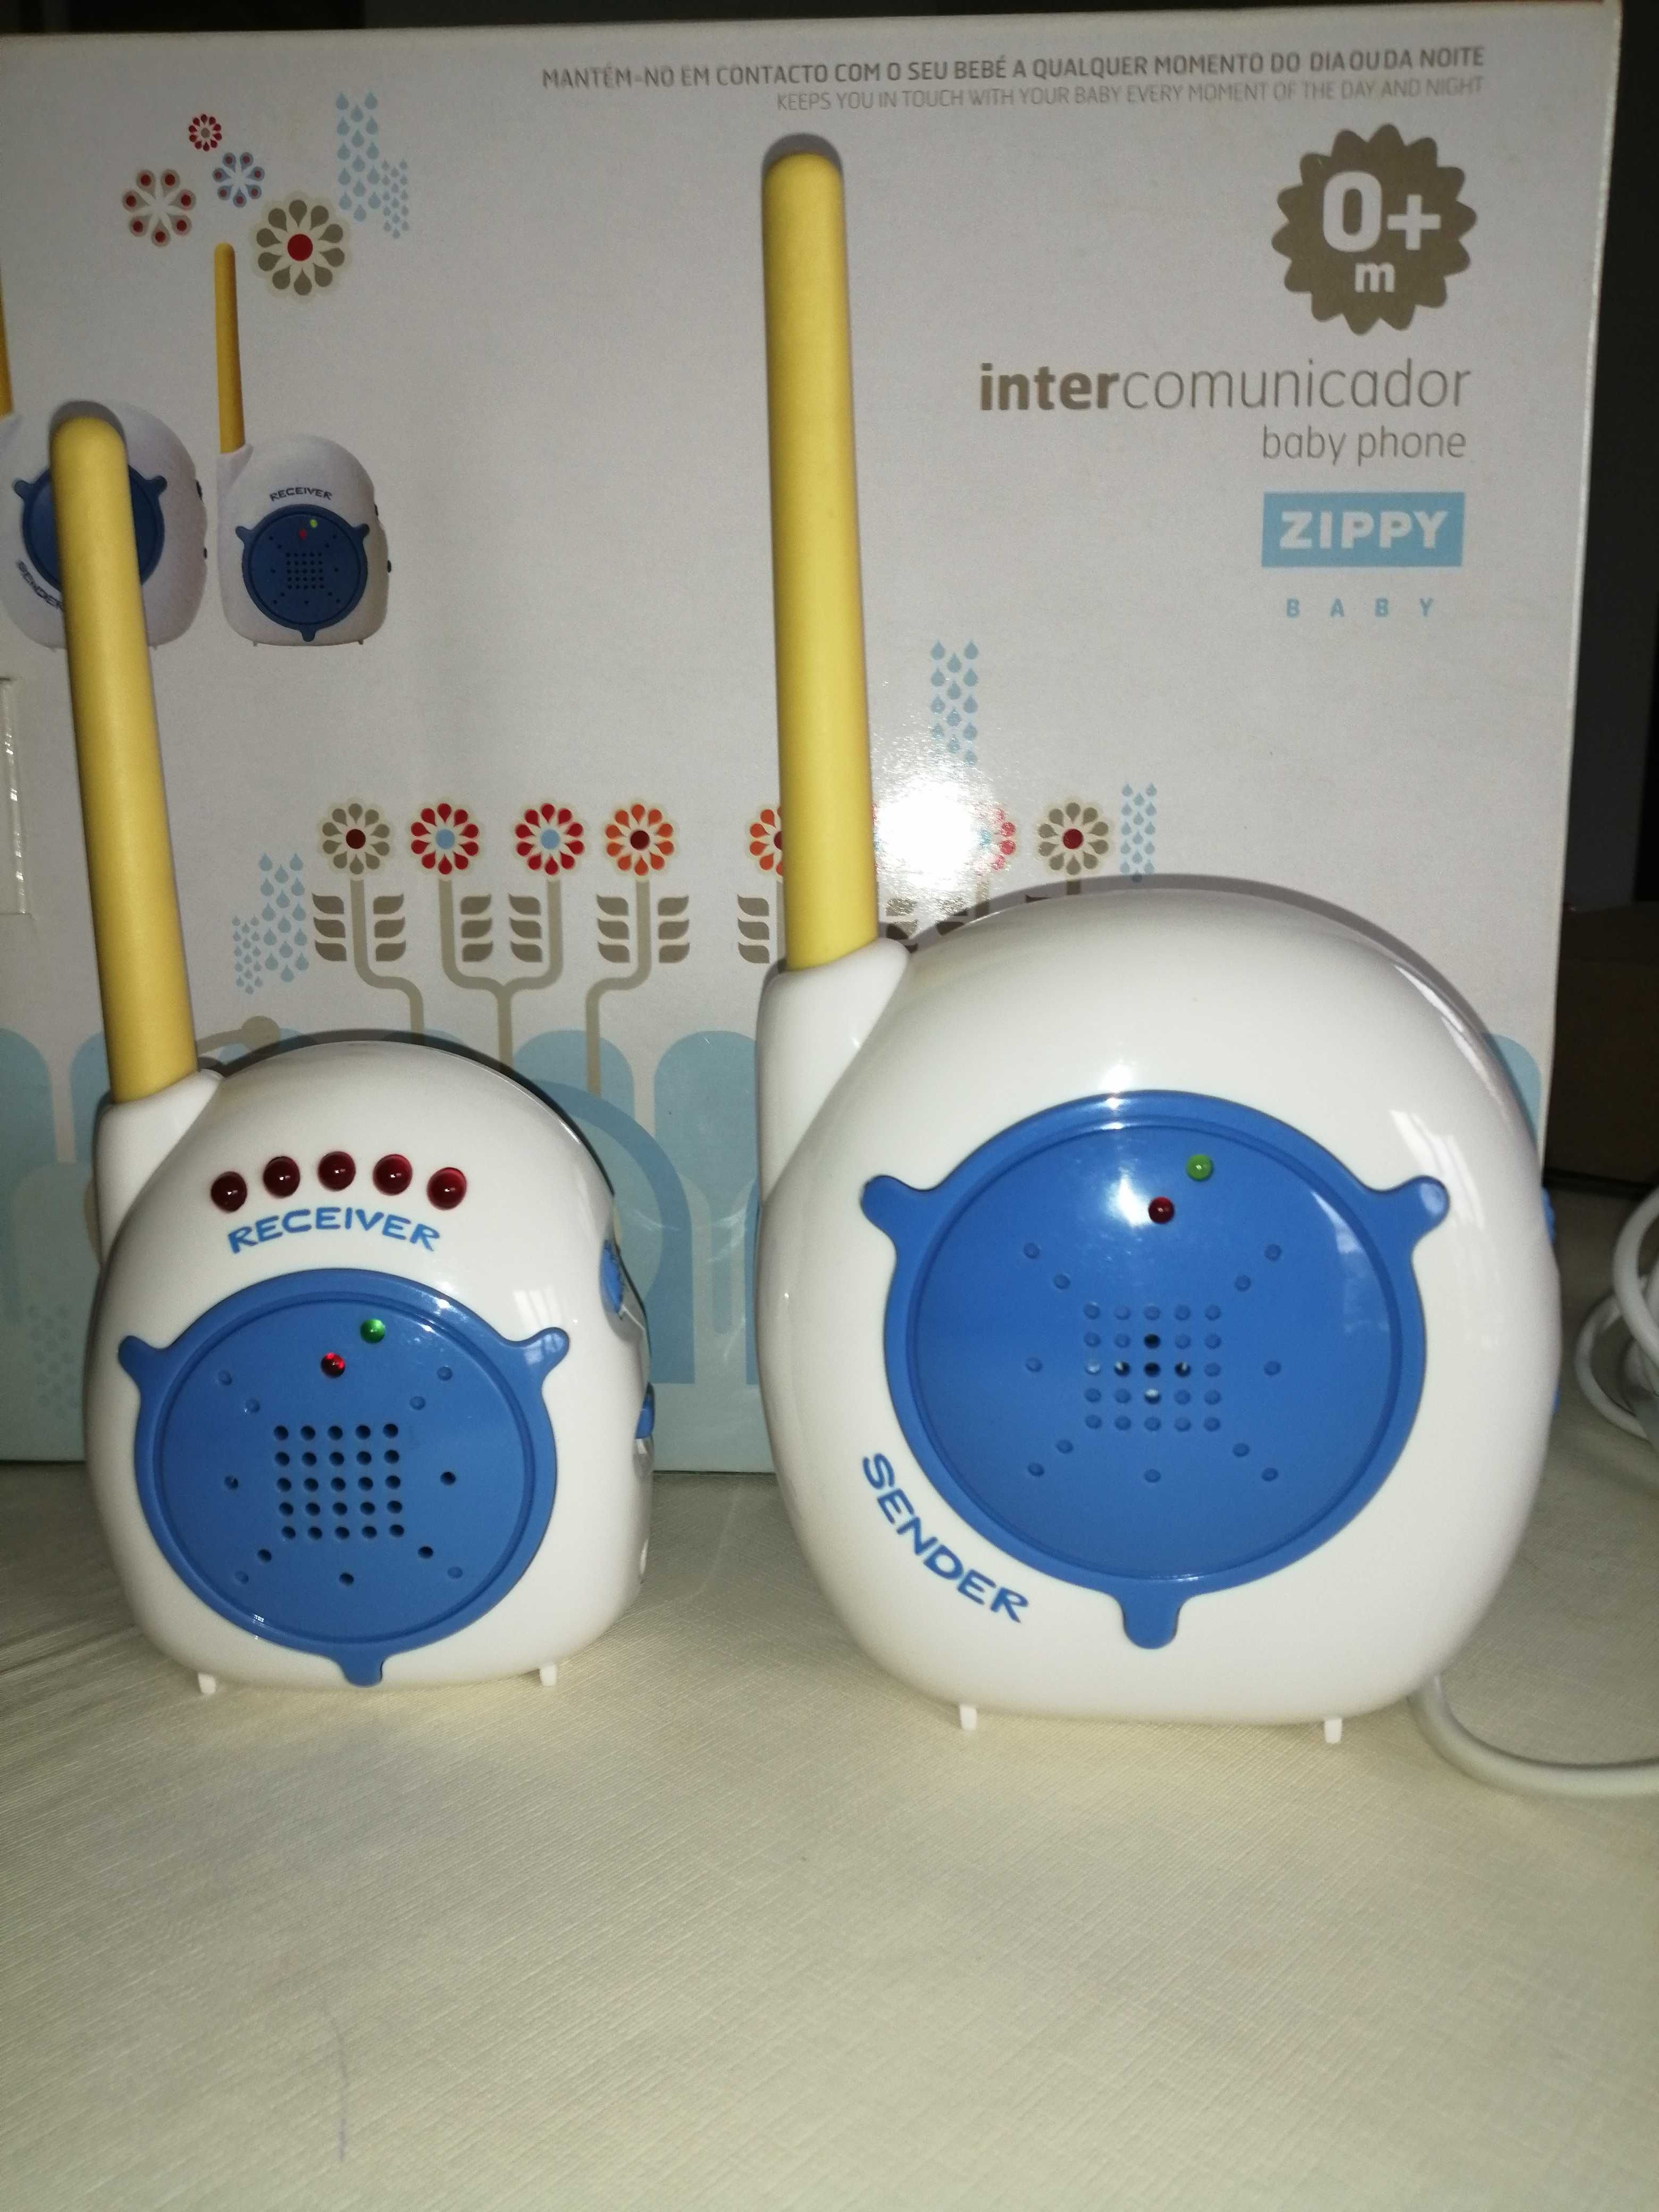 Intercomunicador - Baby phone